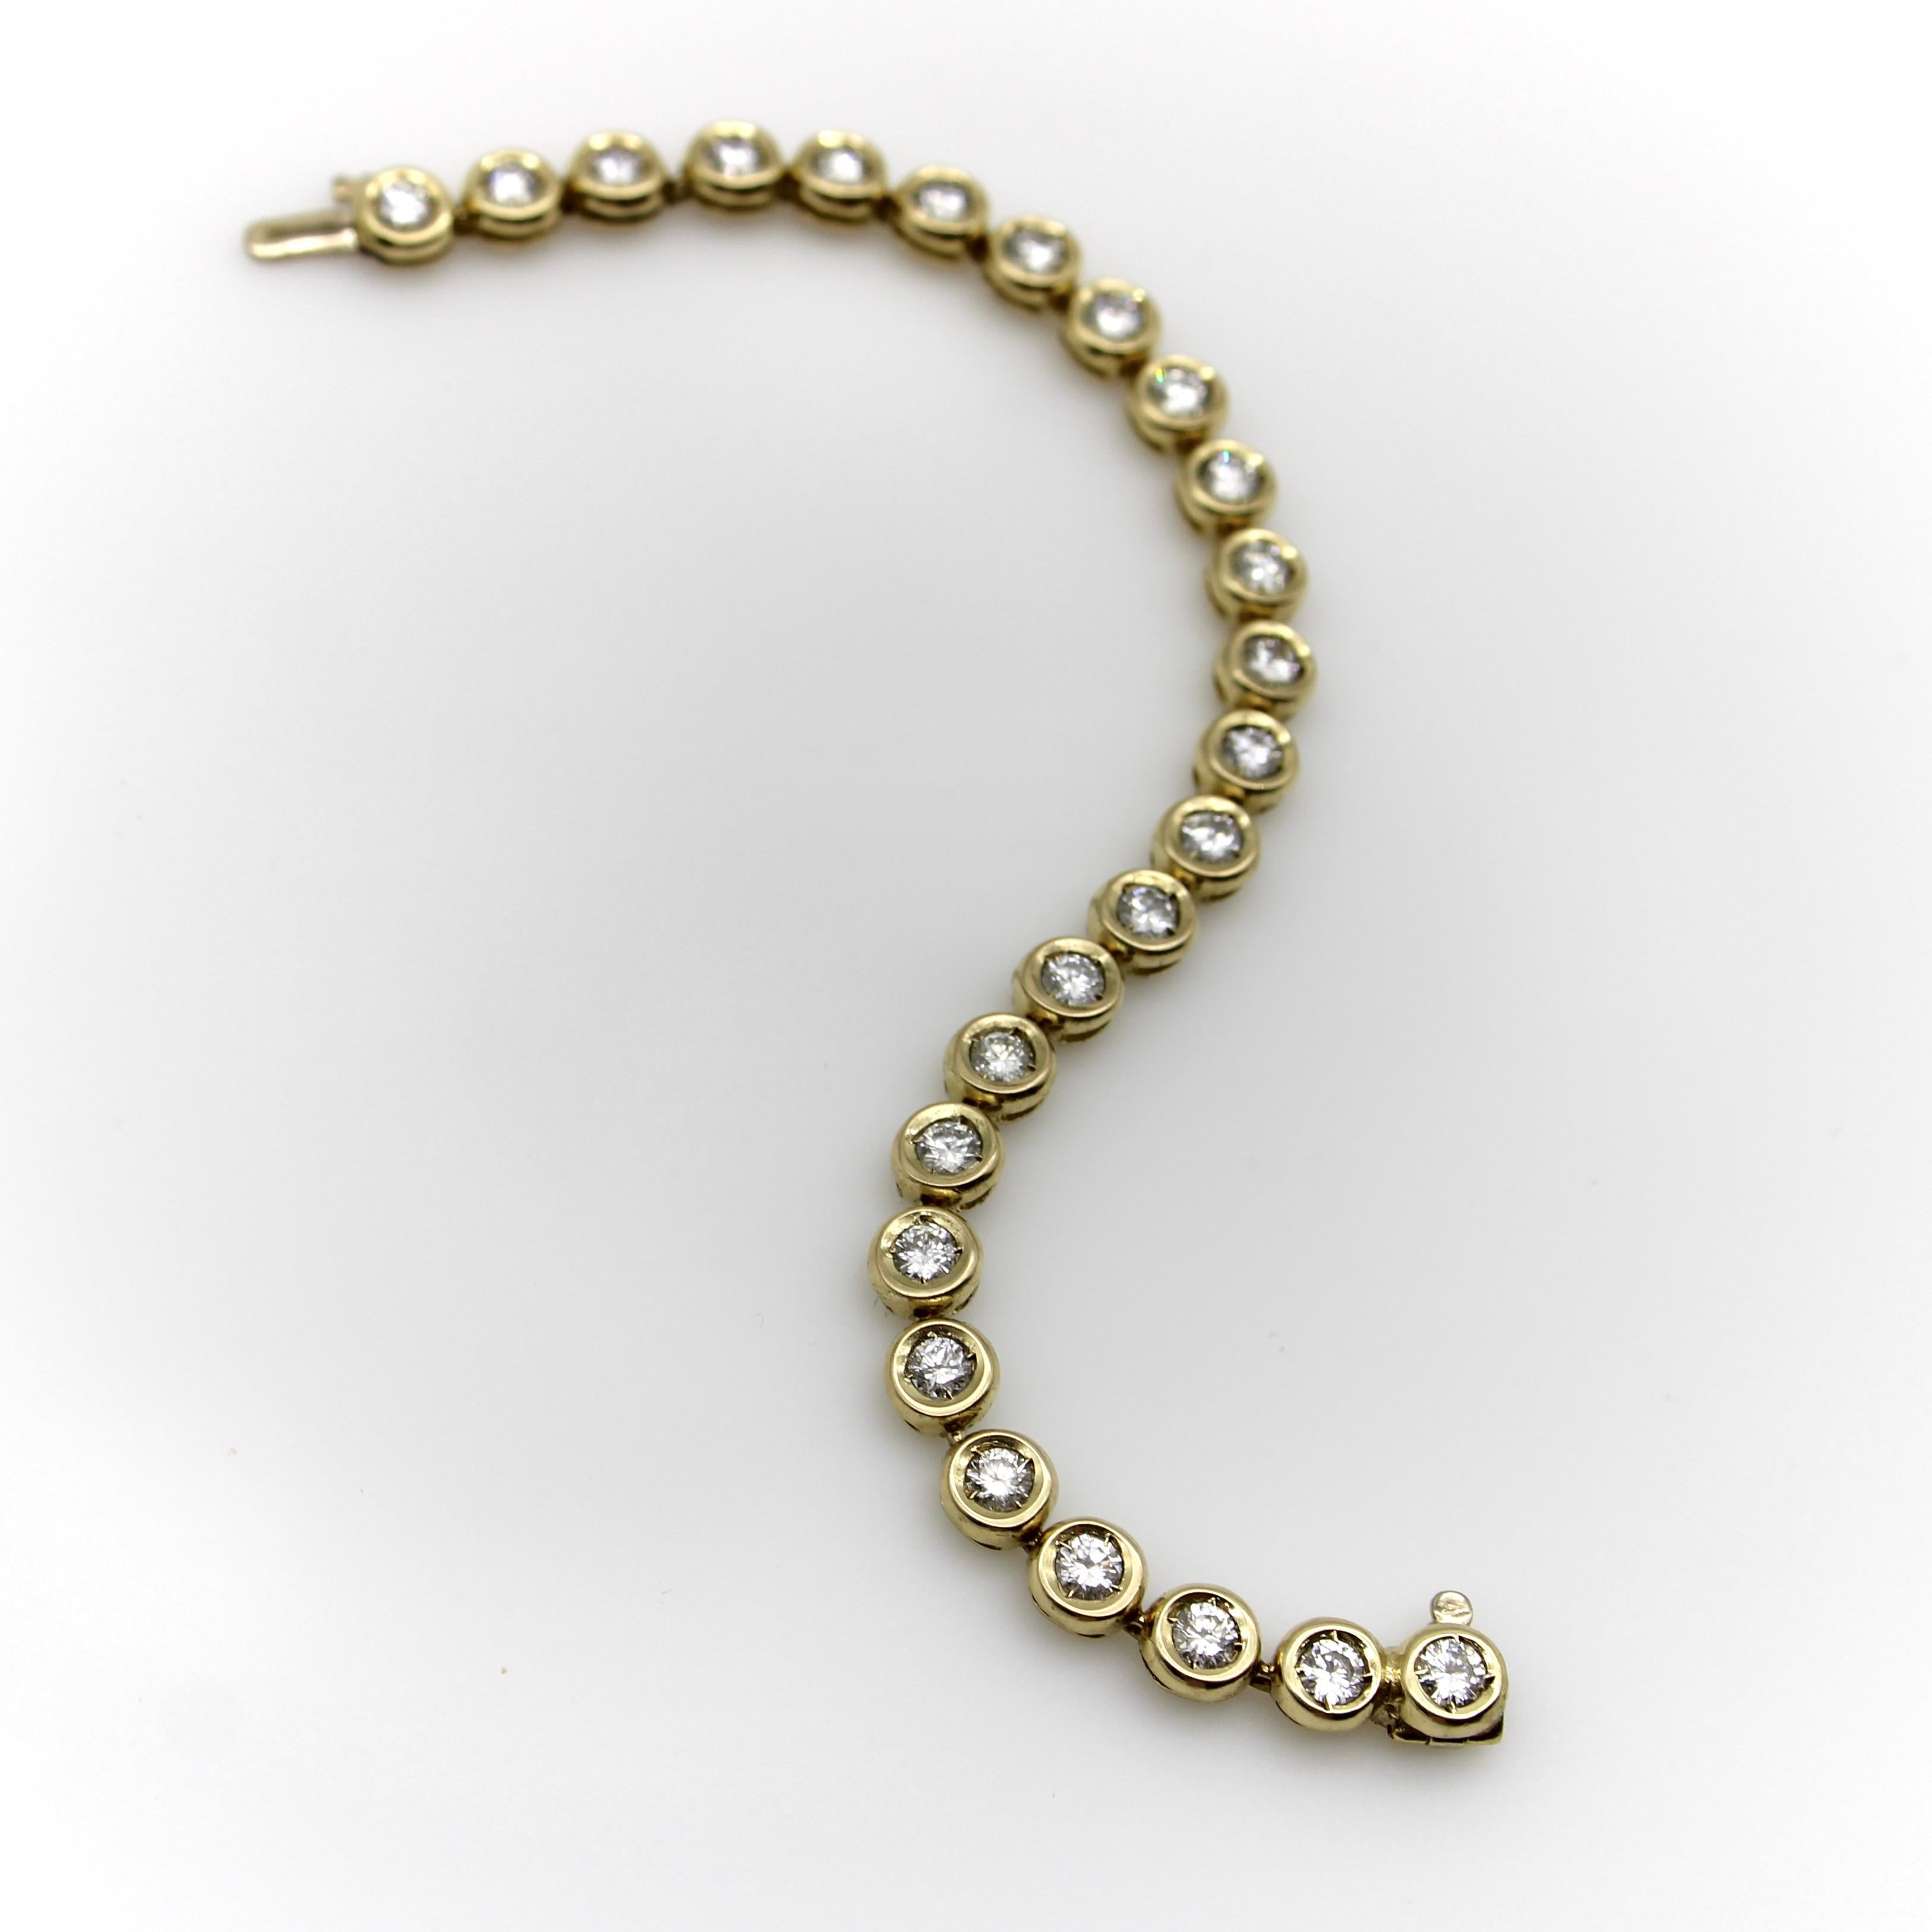 Ce bracelet vintage en or 14k se compose de maillons circulaires, chacun avec un diamant naturel en son centre. Le bracelet brille avec 25 diamants pour un poids impressionnant de 3,5 carats. Les maillons circulaires sont insérés pour créer une